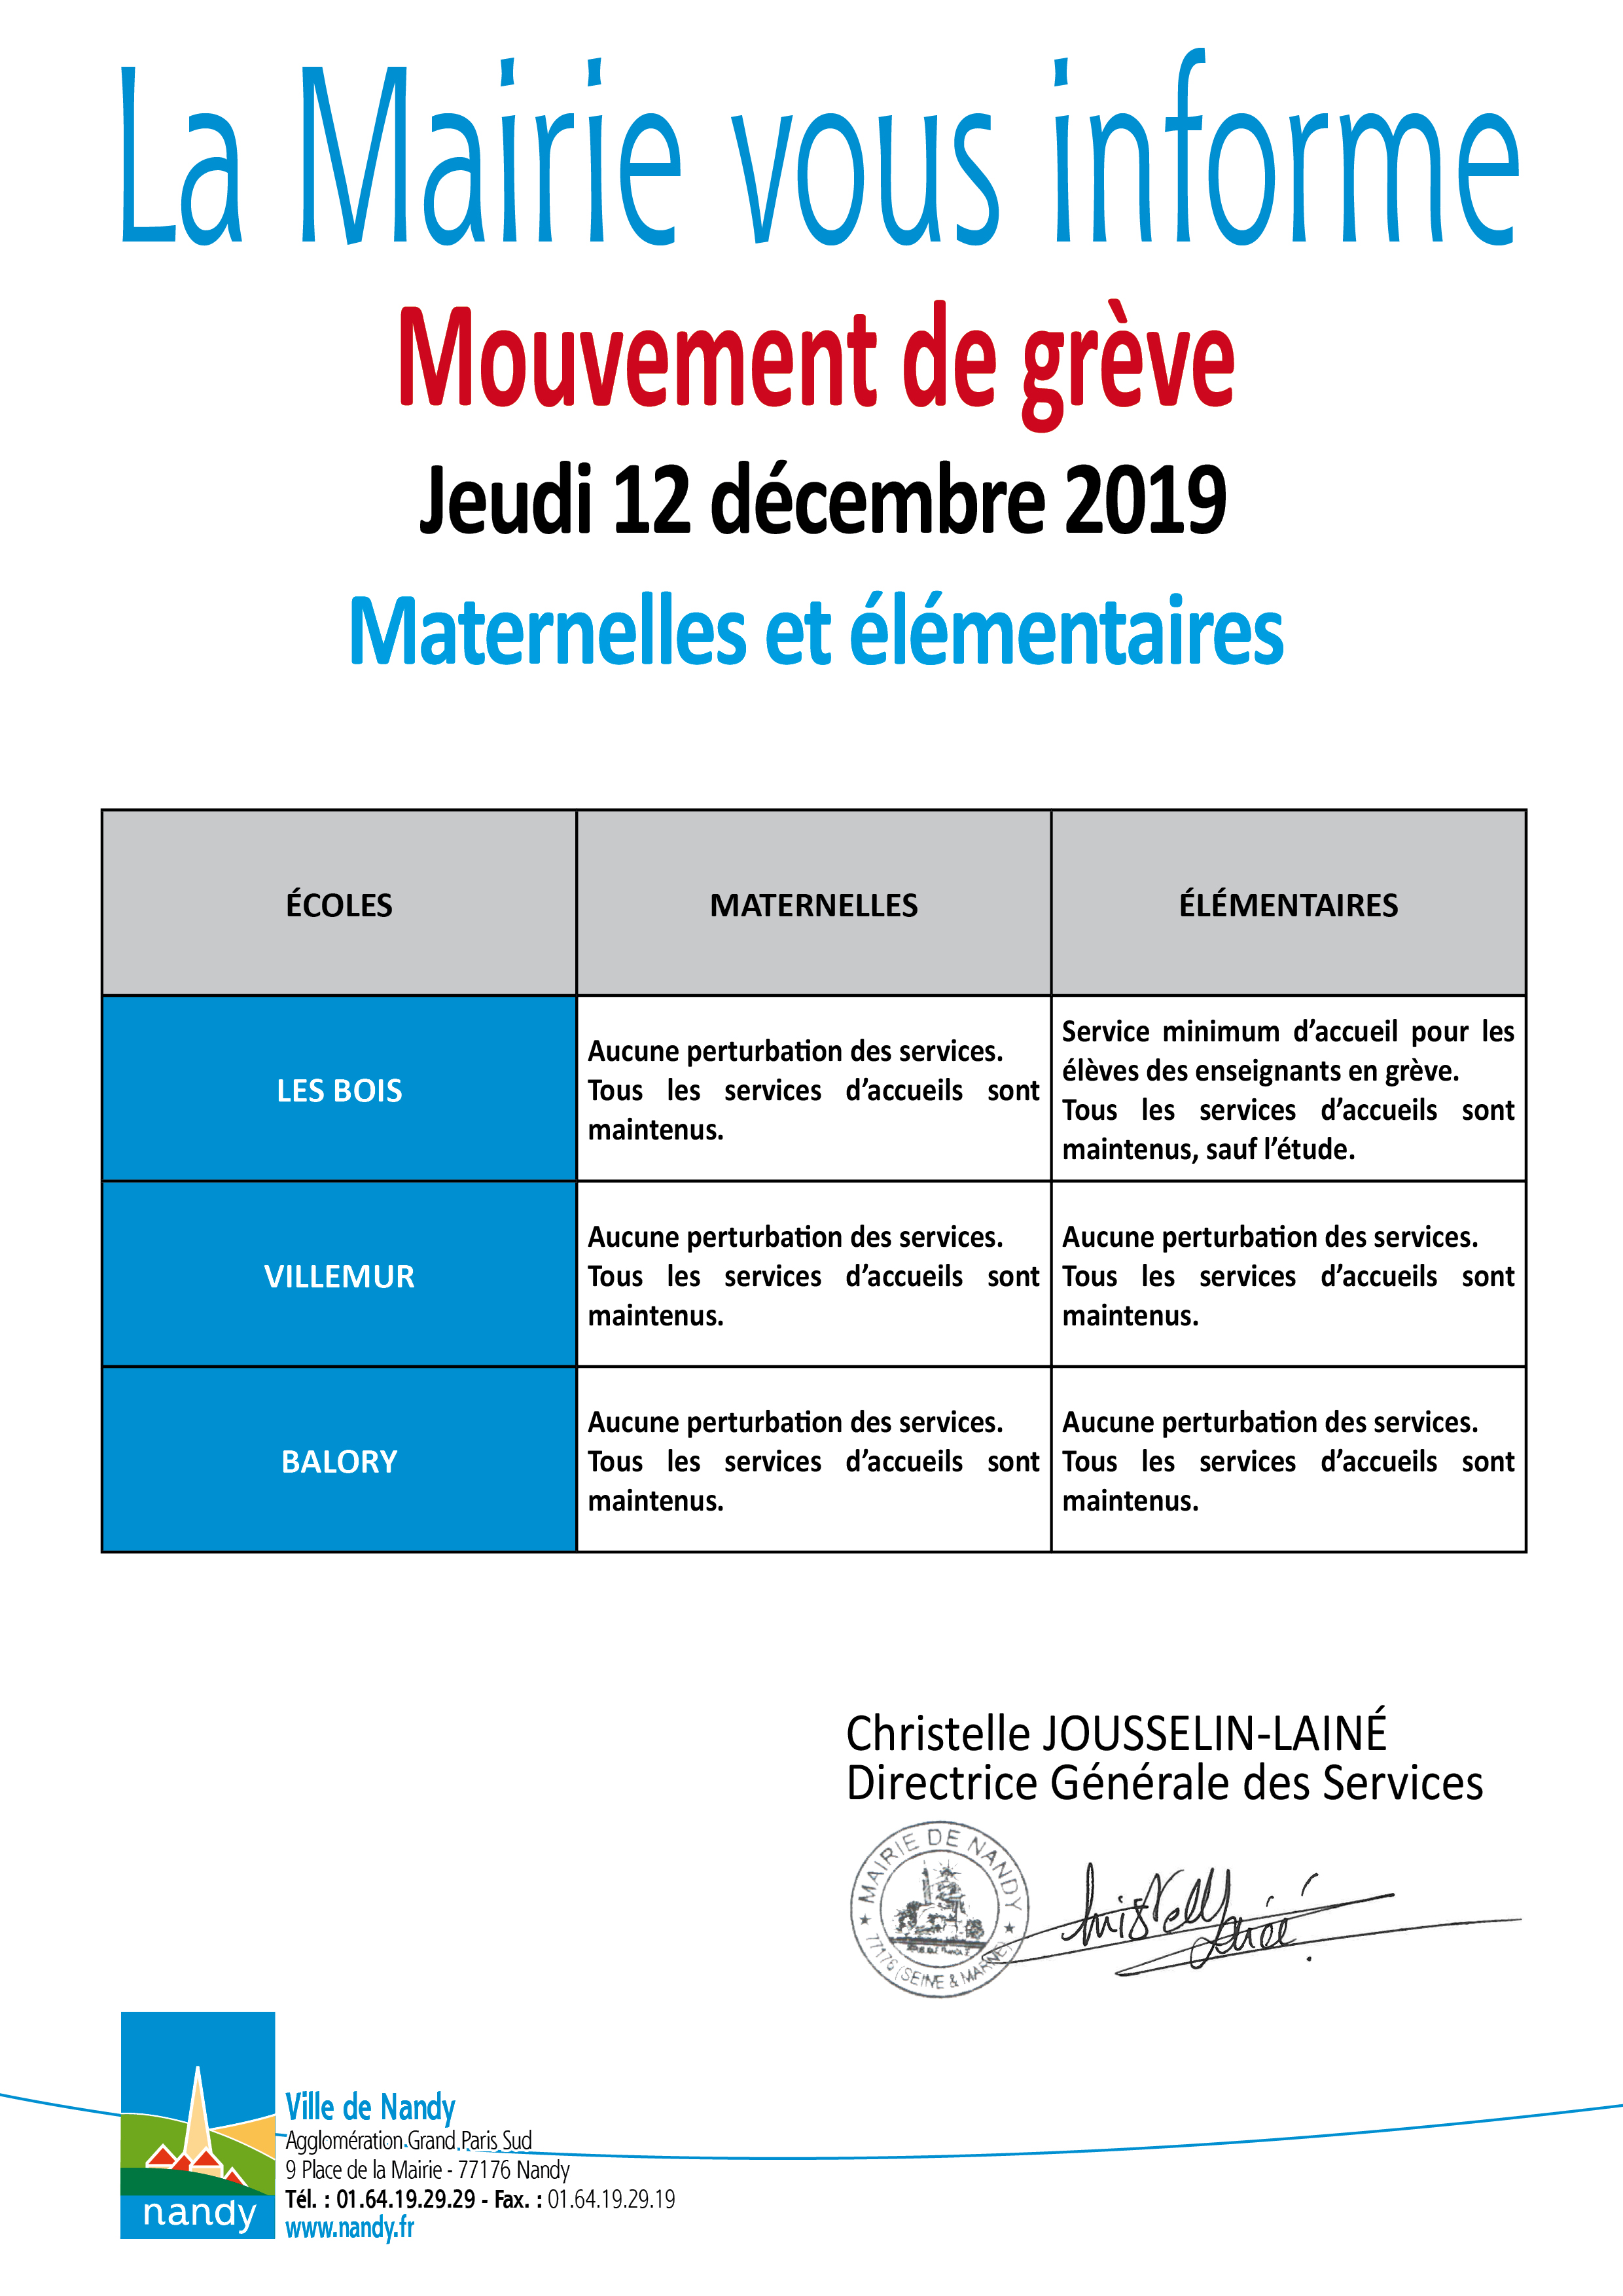 La Mairie vous informe grève mardi 12 décembre 2019